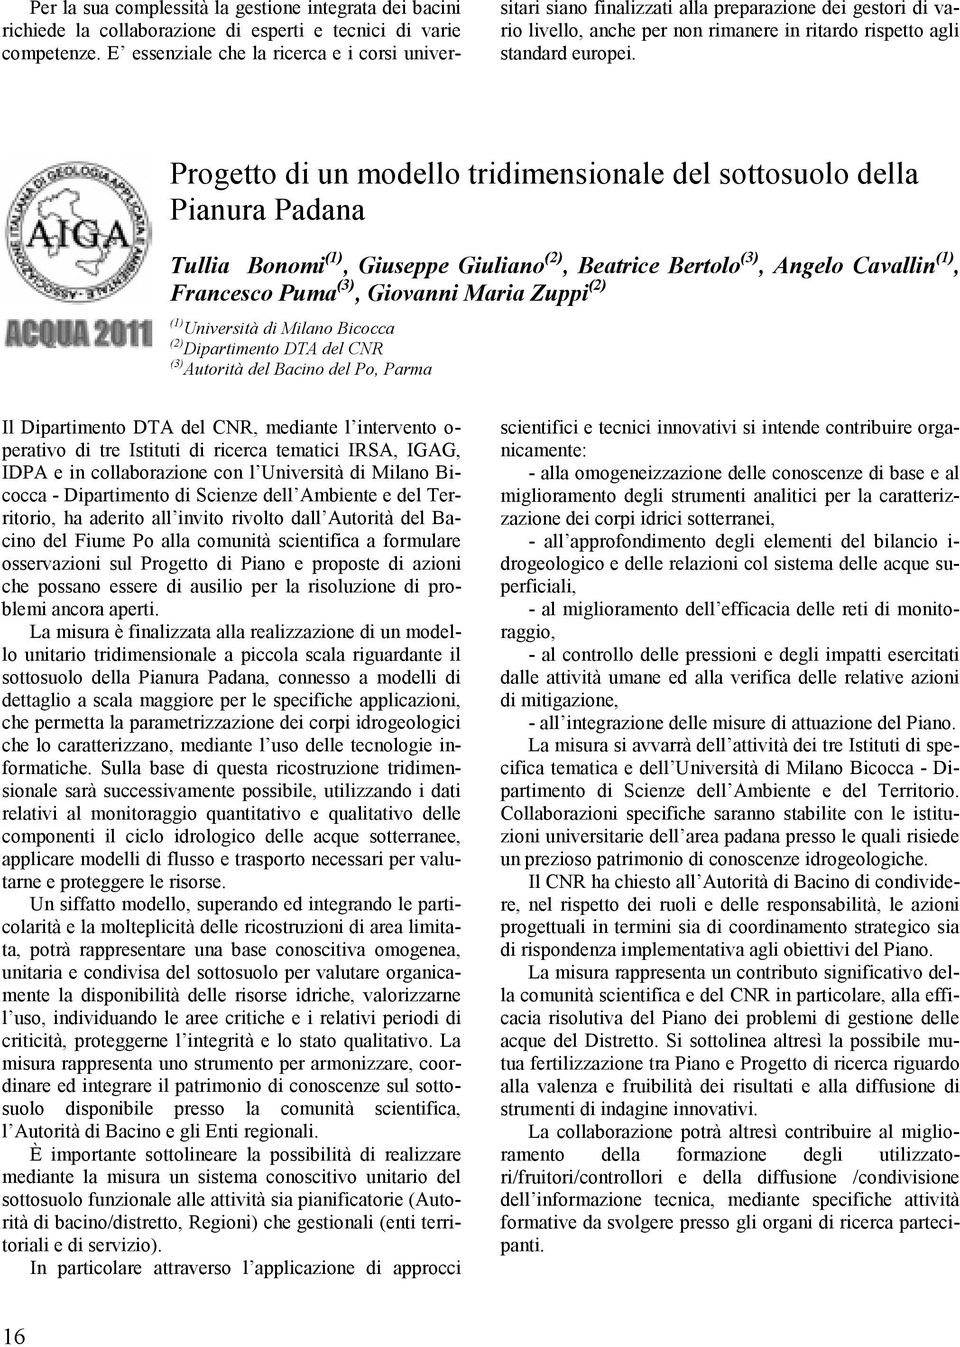 Progetto di un modello tridimensionale del sottosuolo della Pianura Padana Tullia Bonomi (1), Giuseppe Giuliano (2), Beatrice Bertolo (3), Angelo Cavallin (1), Francesco Puma (3), Giovanni Maria